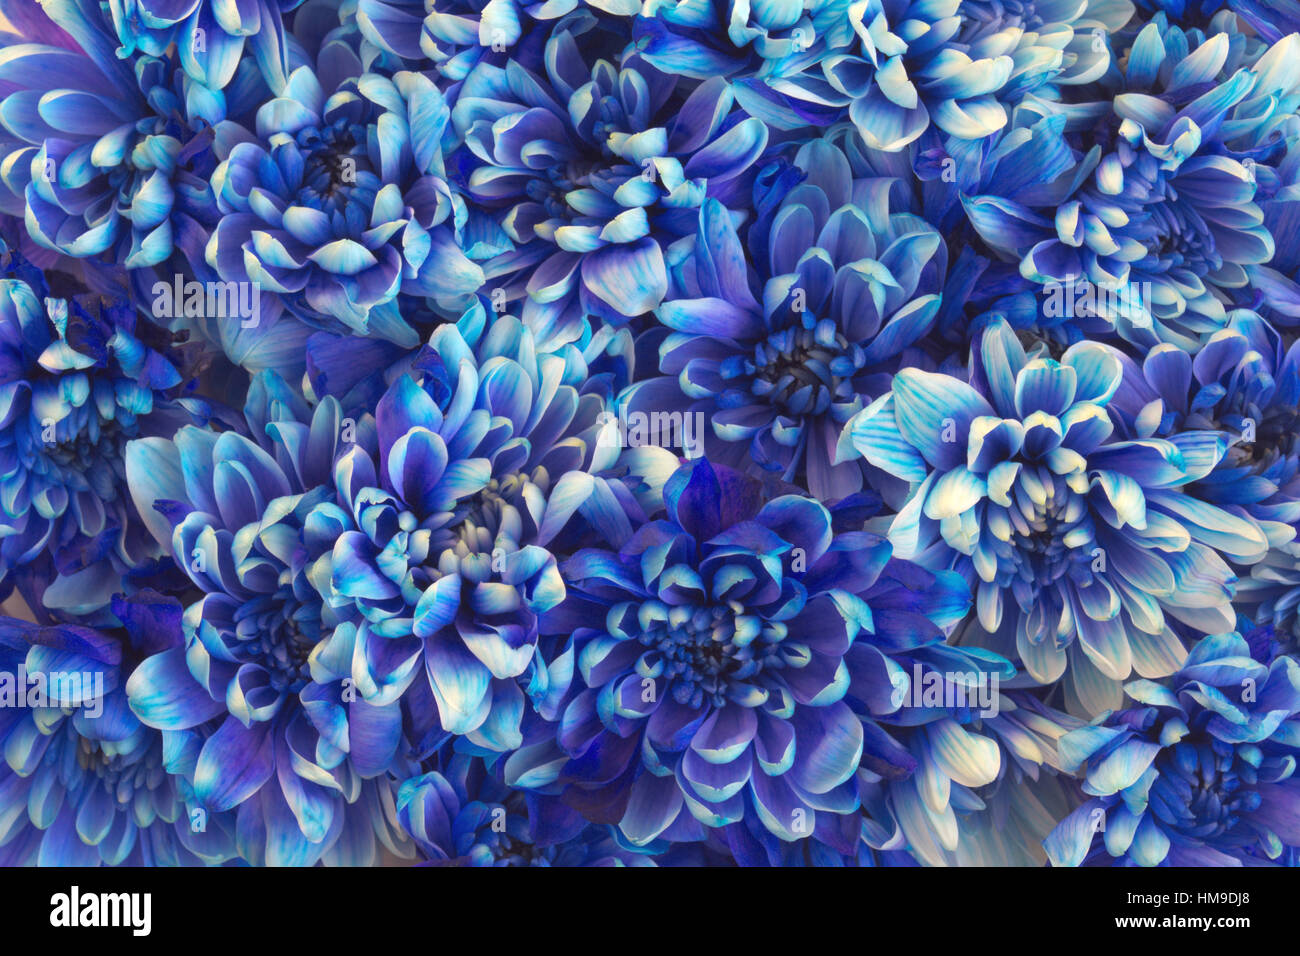 Belle fleur avec beaucoup de chrysanthèmes bleu Banque D'Images